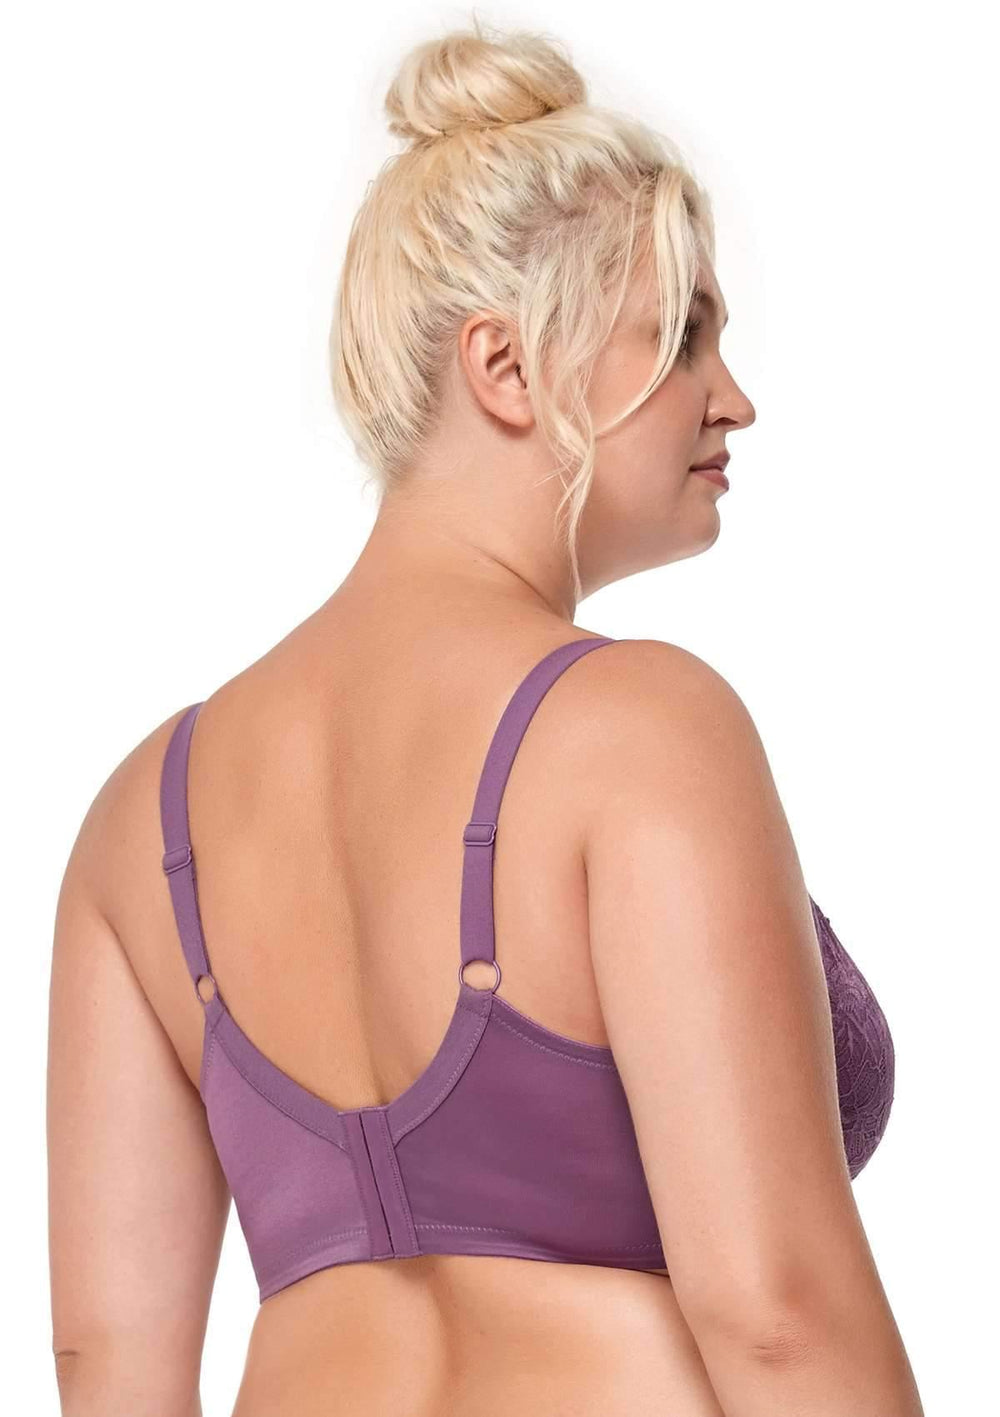 LEEy-World Sports Bras for Women Women's Front Closure Bra Underwire  Unlined T-Back Plus Size Lacy Unpadded Full Coverage Racerback Bras  Purple,36/80 